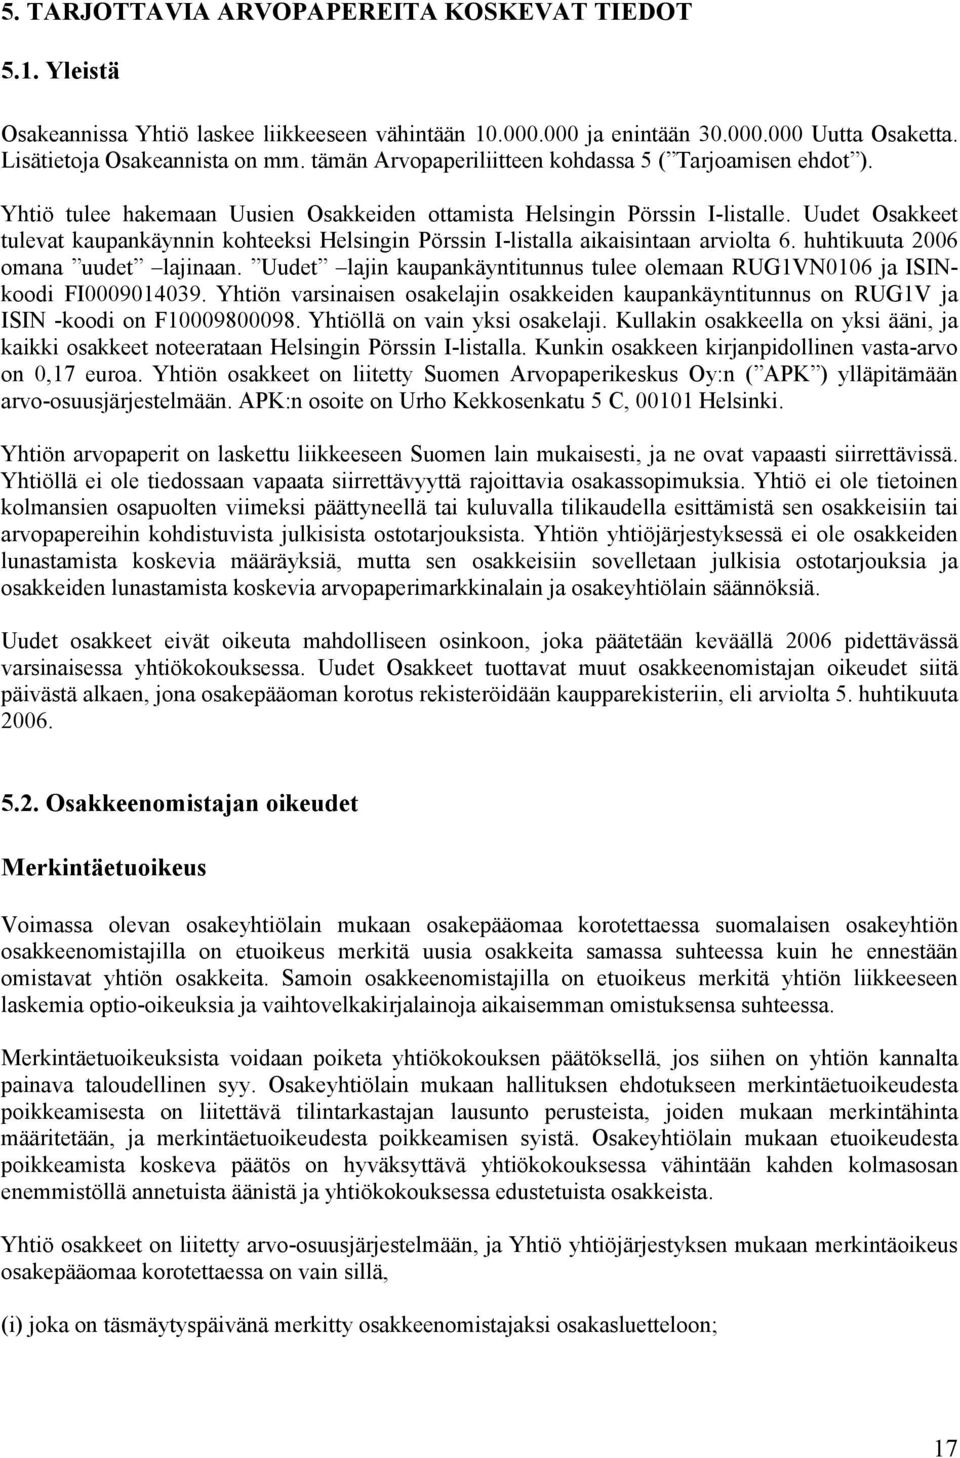 Uudet Osakkeet tulevat kaupankäynnin kohteeksi Helsingin Pörssin I-listalla aikaisintaan arviolta 6. huhtikuuta 2006 omana uudet lajinaan.